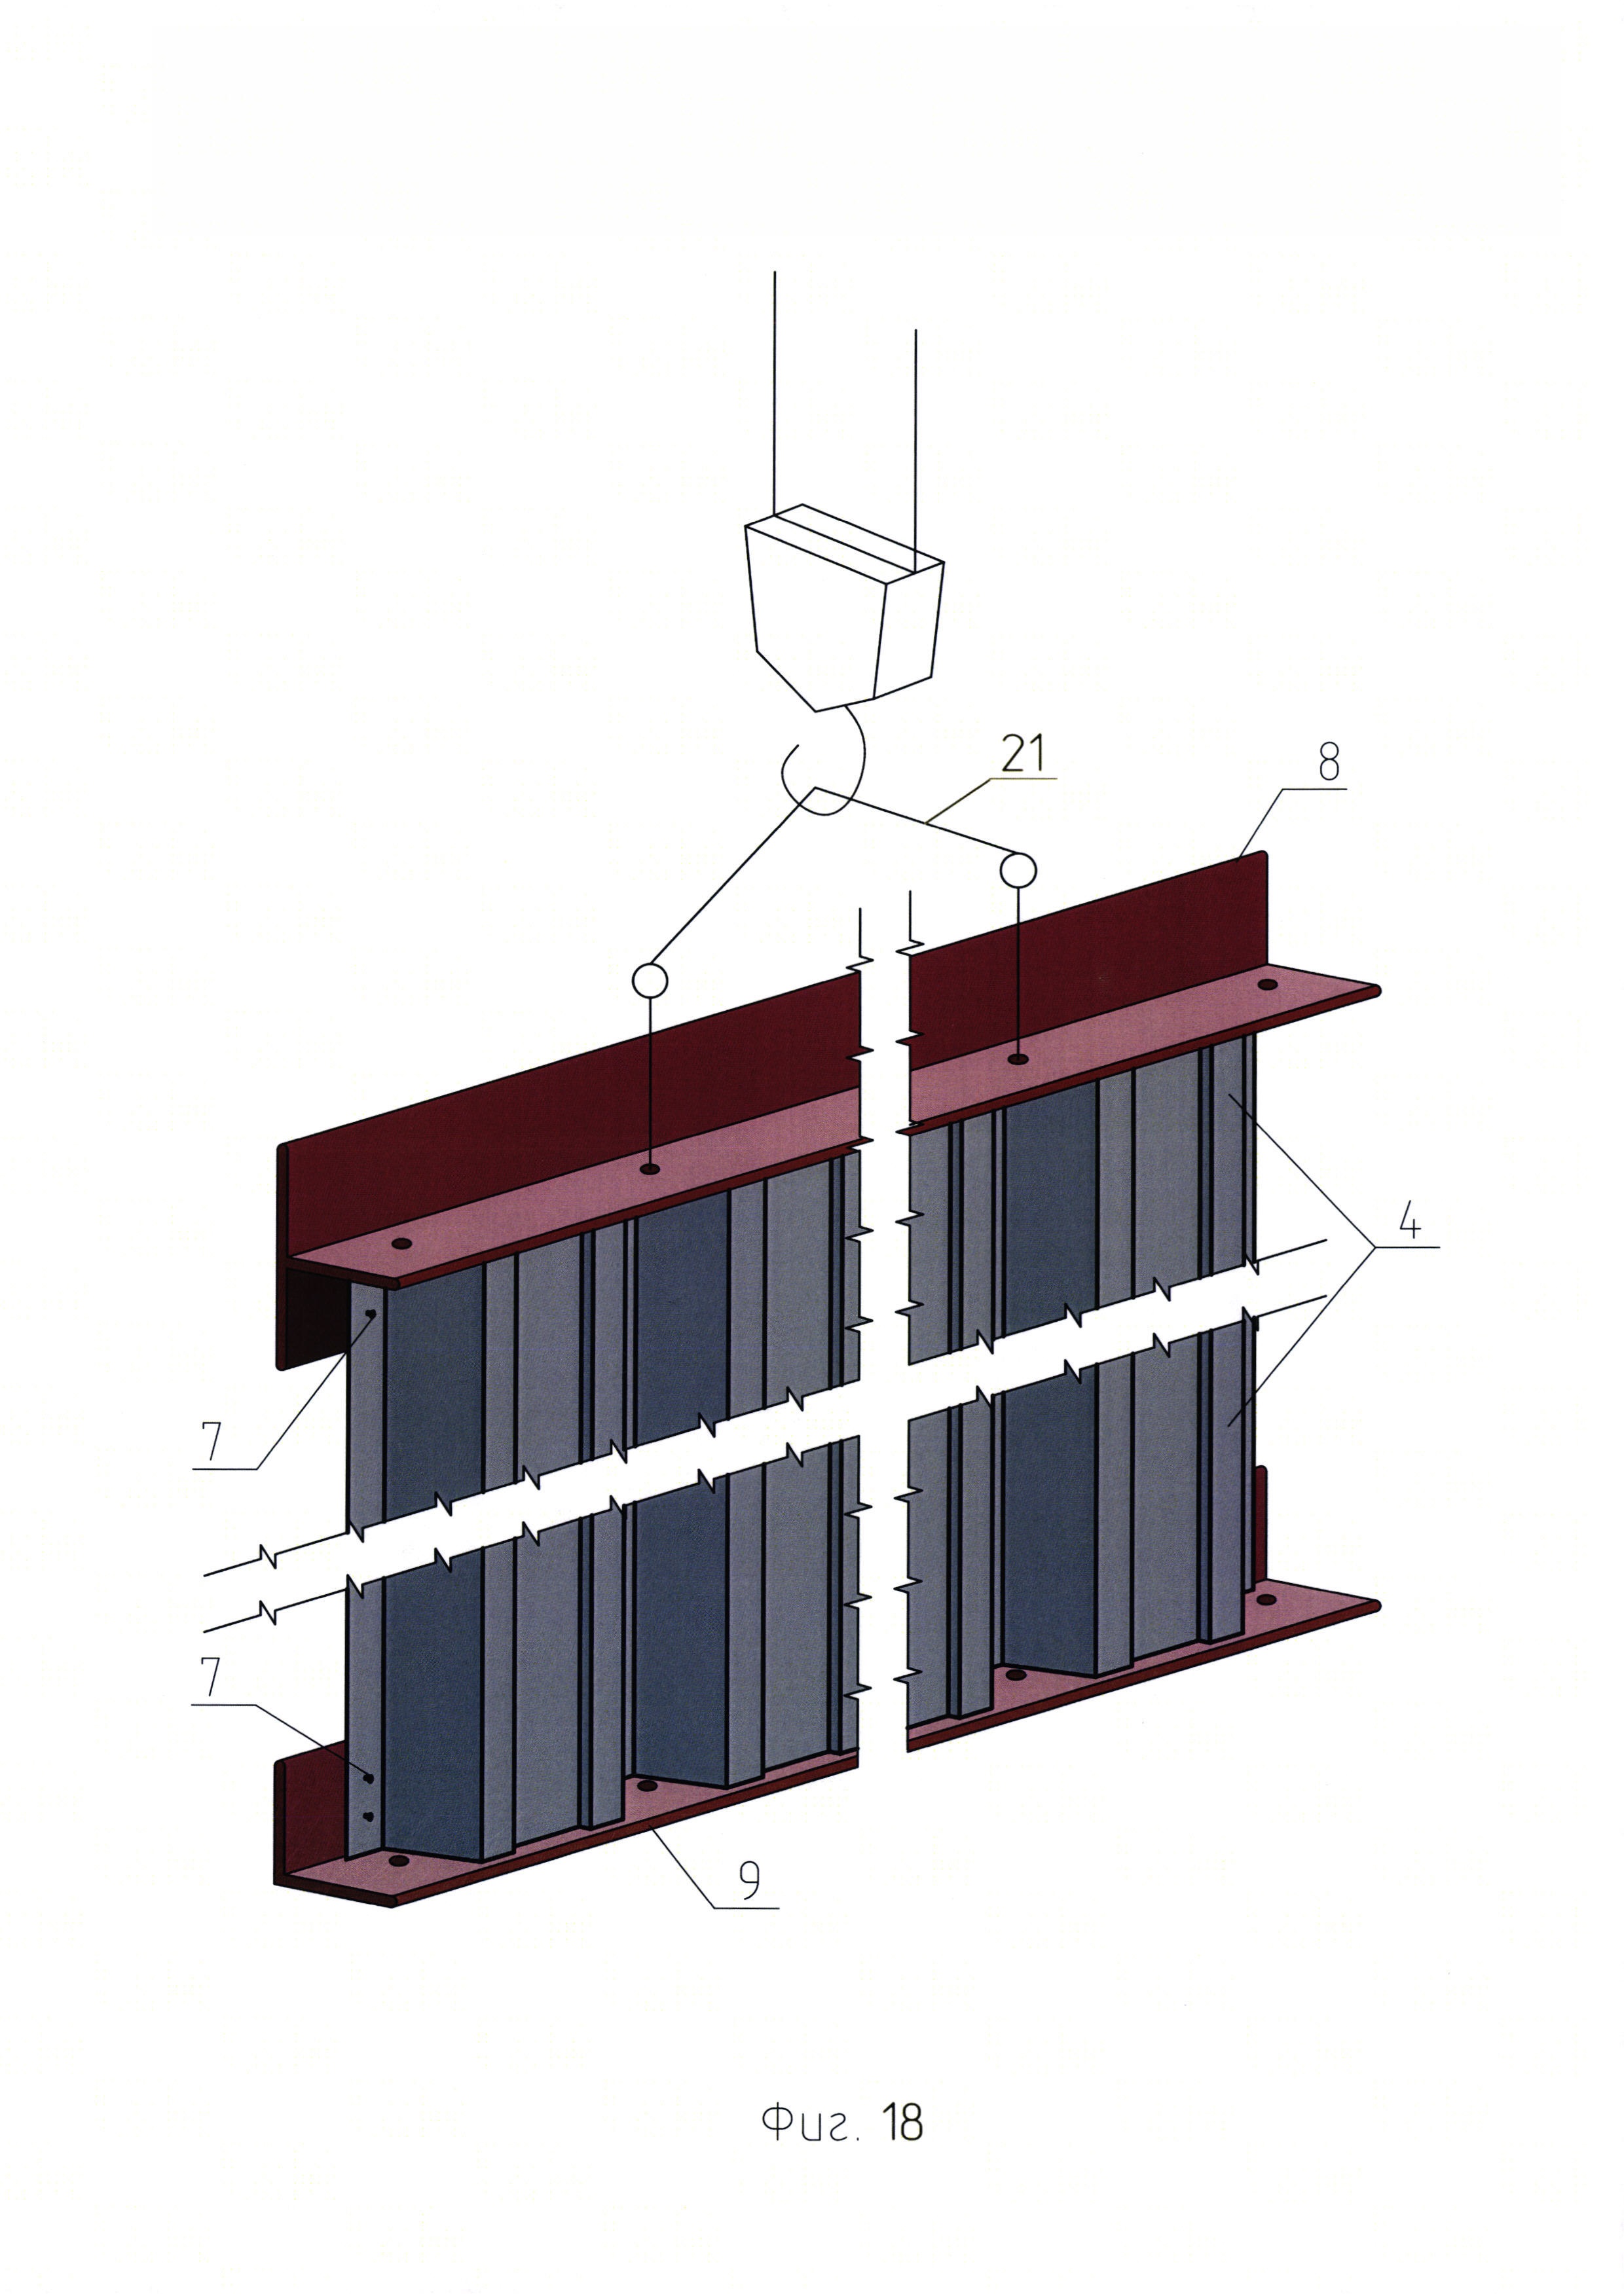 Несъёмная опалубочная система для крупноблочного строительства сооружений